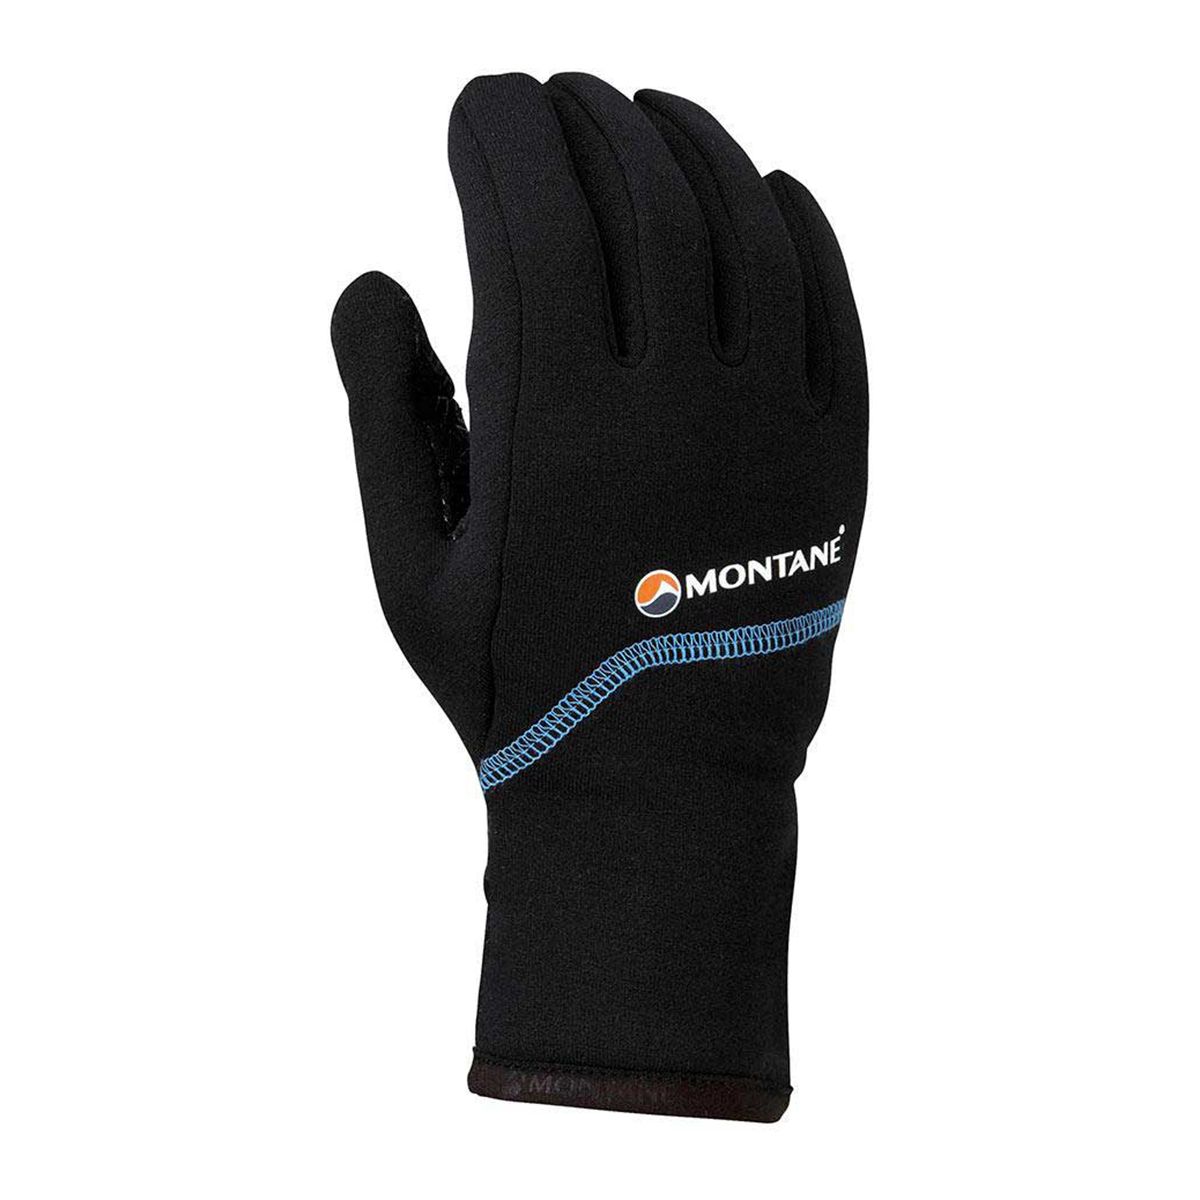 Powerstretch Pro Grippy Glove - Men